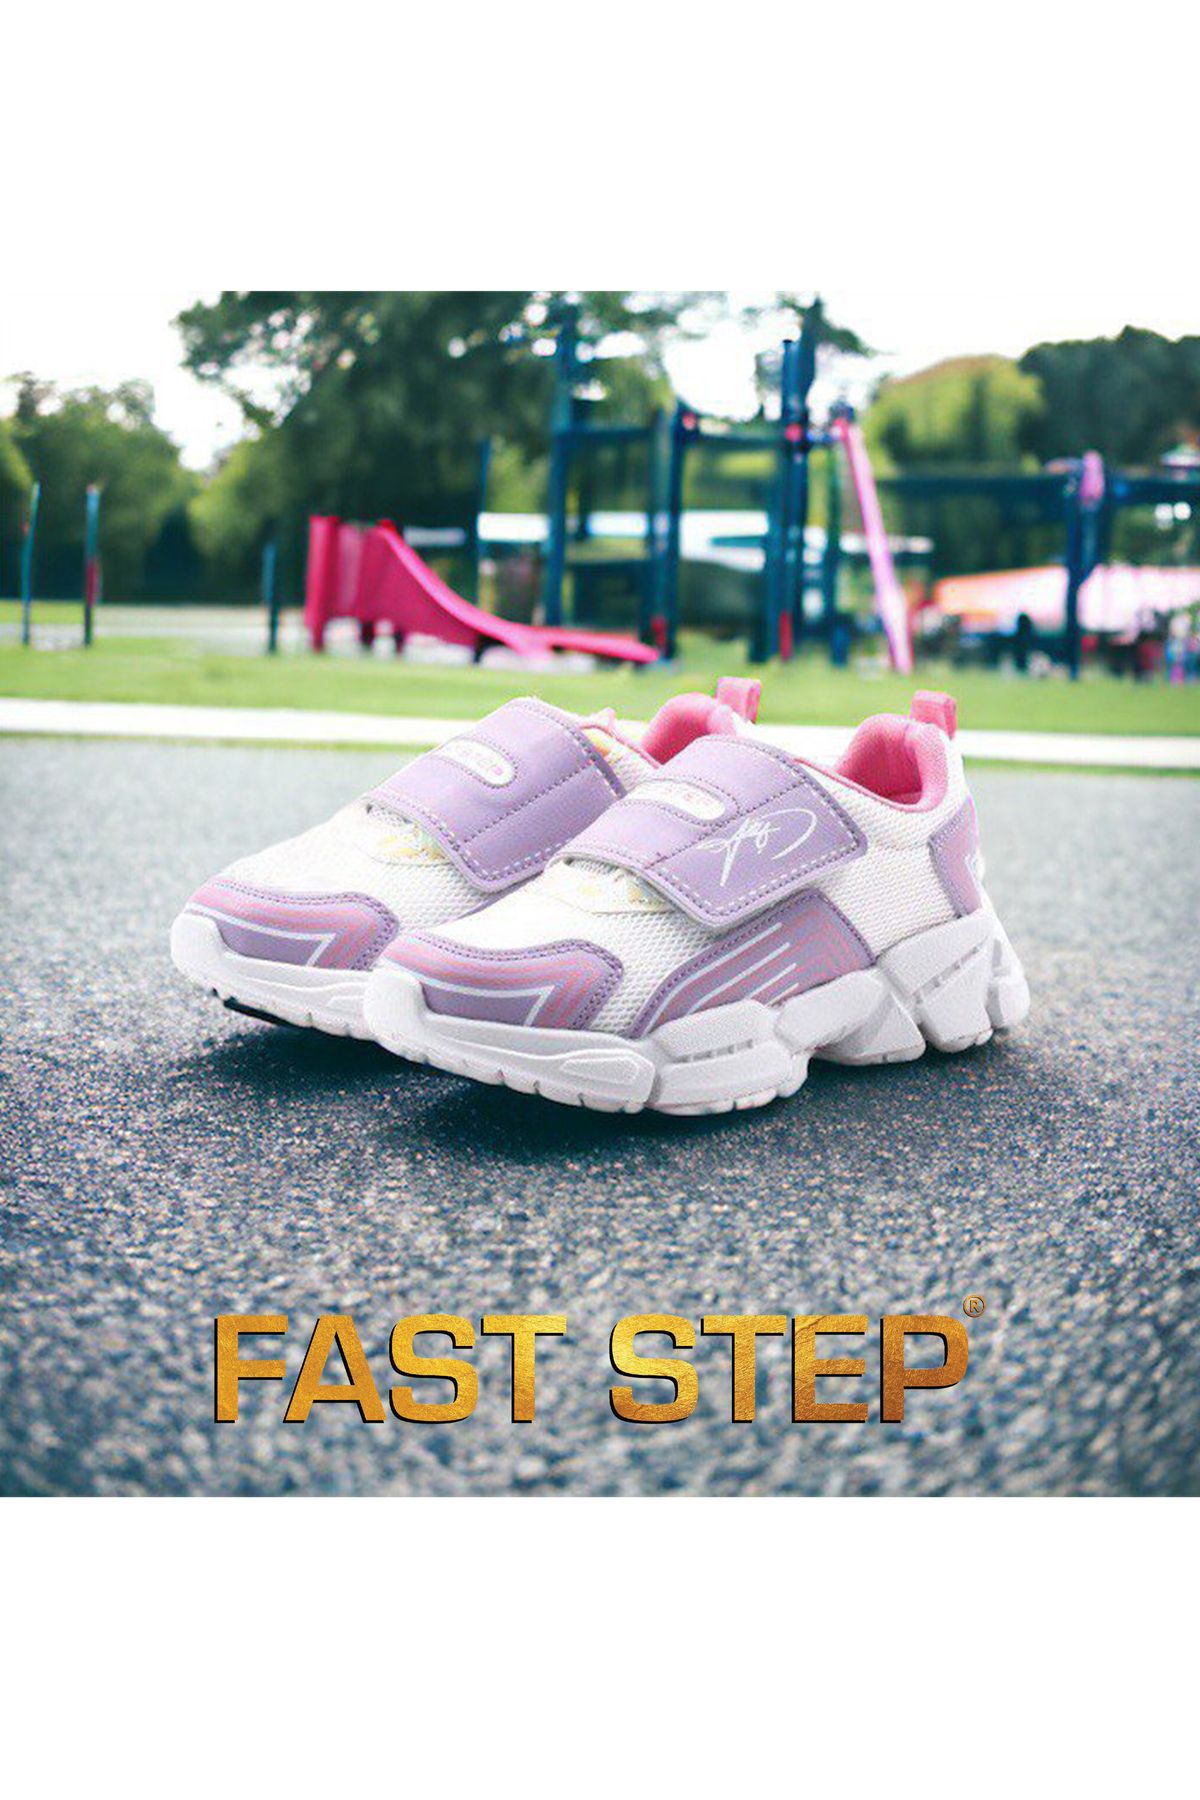 Fast Step Çocuk Ortopedik Cırtlı Esnek Hafif Nefes Alabilen Fileli Çocuk Sneaker Spor Ayakkabı 133xcaa-35